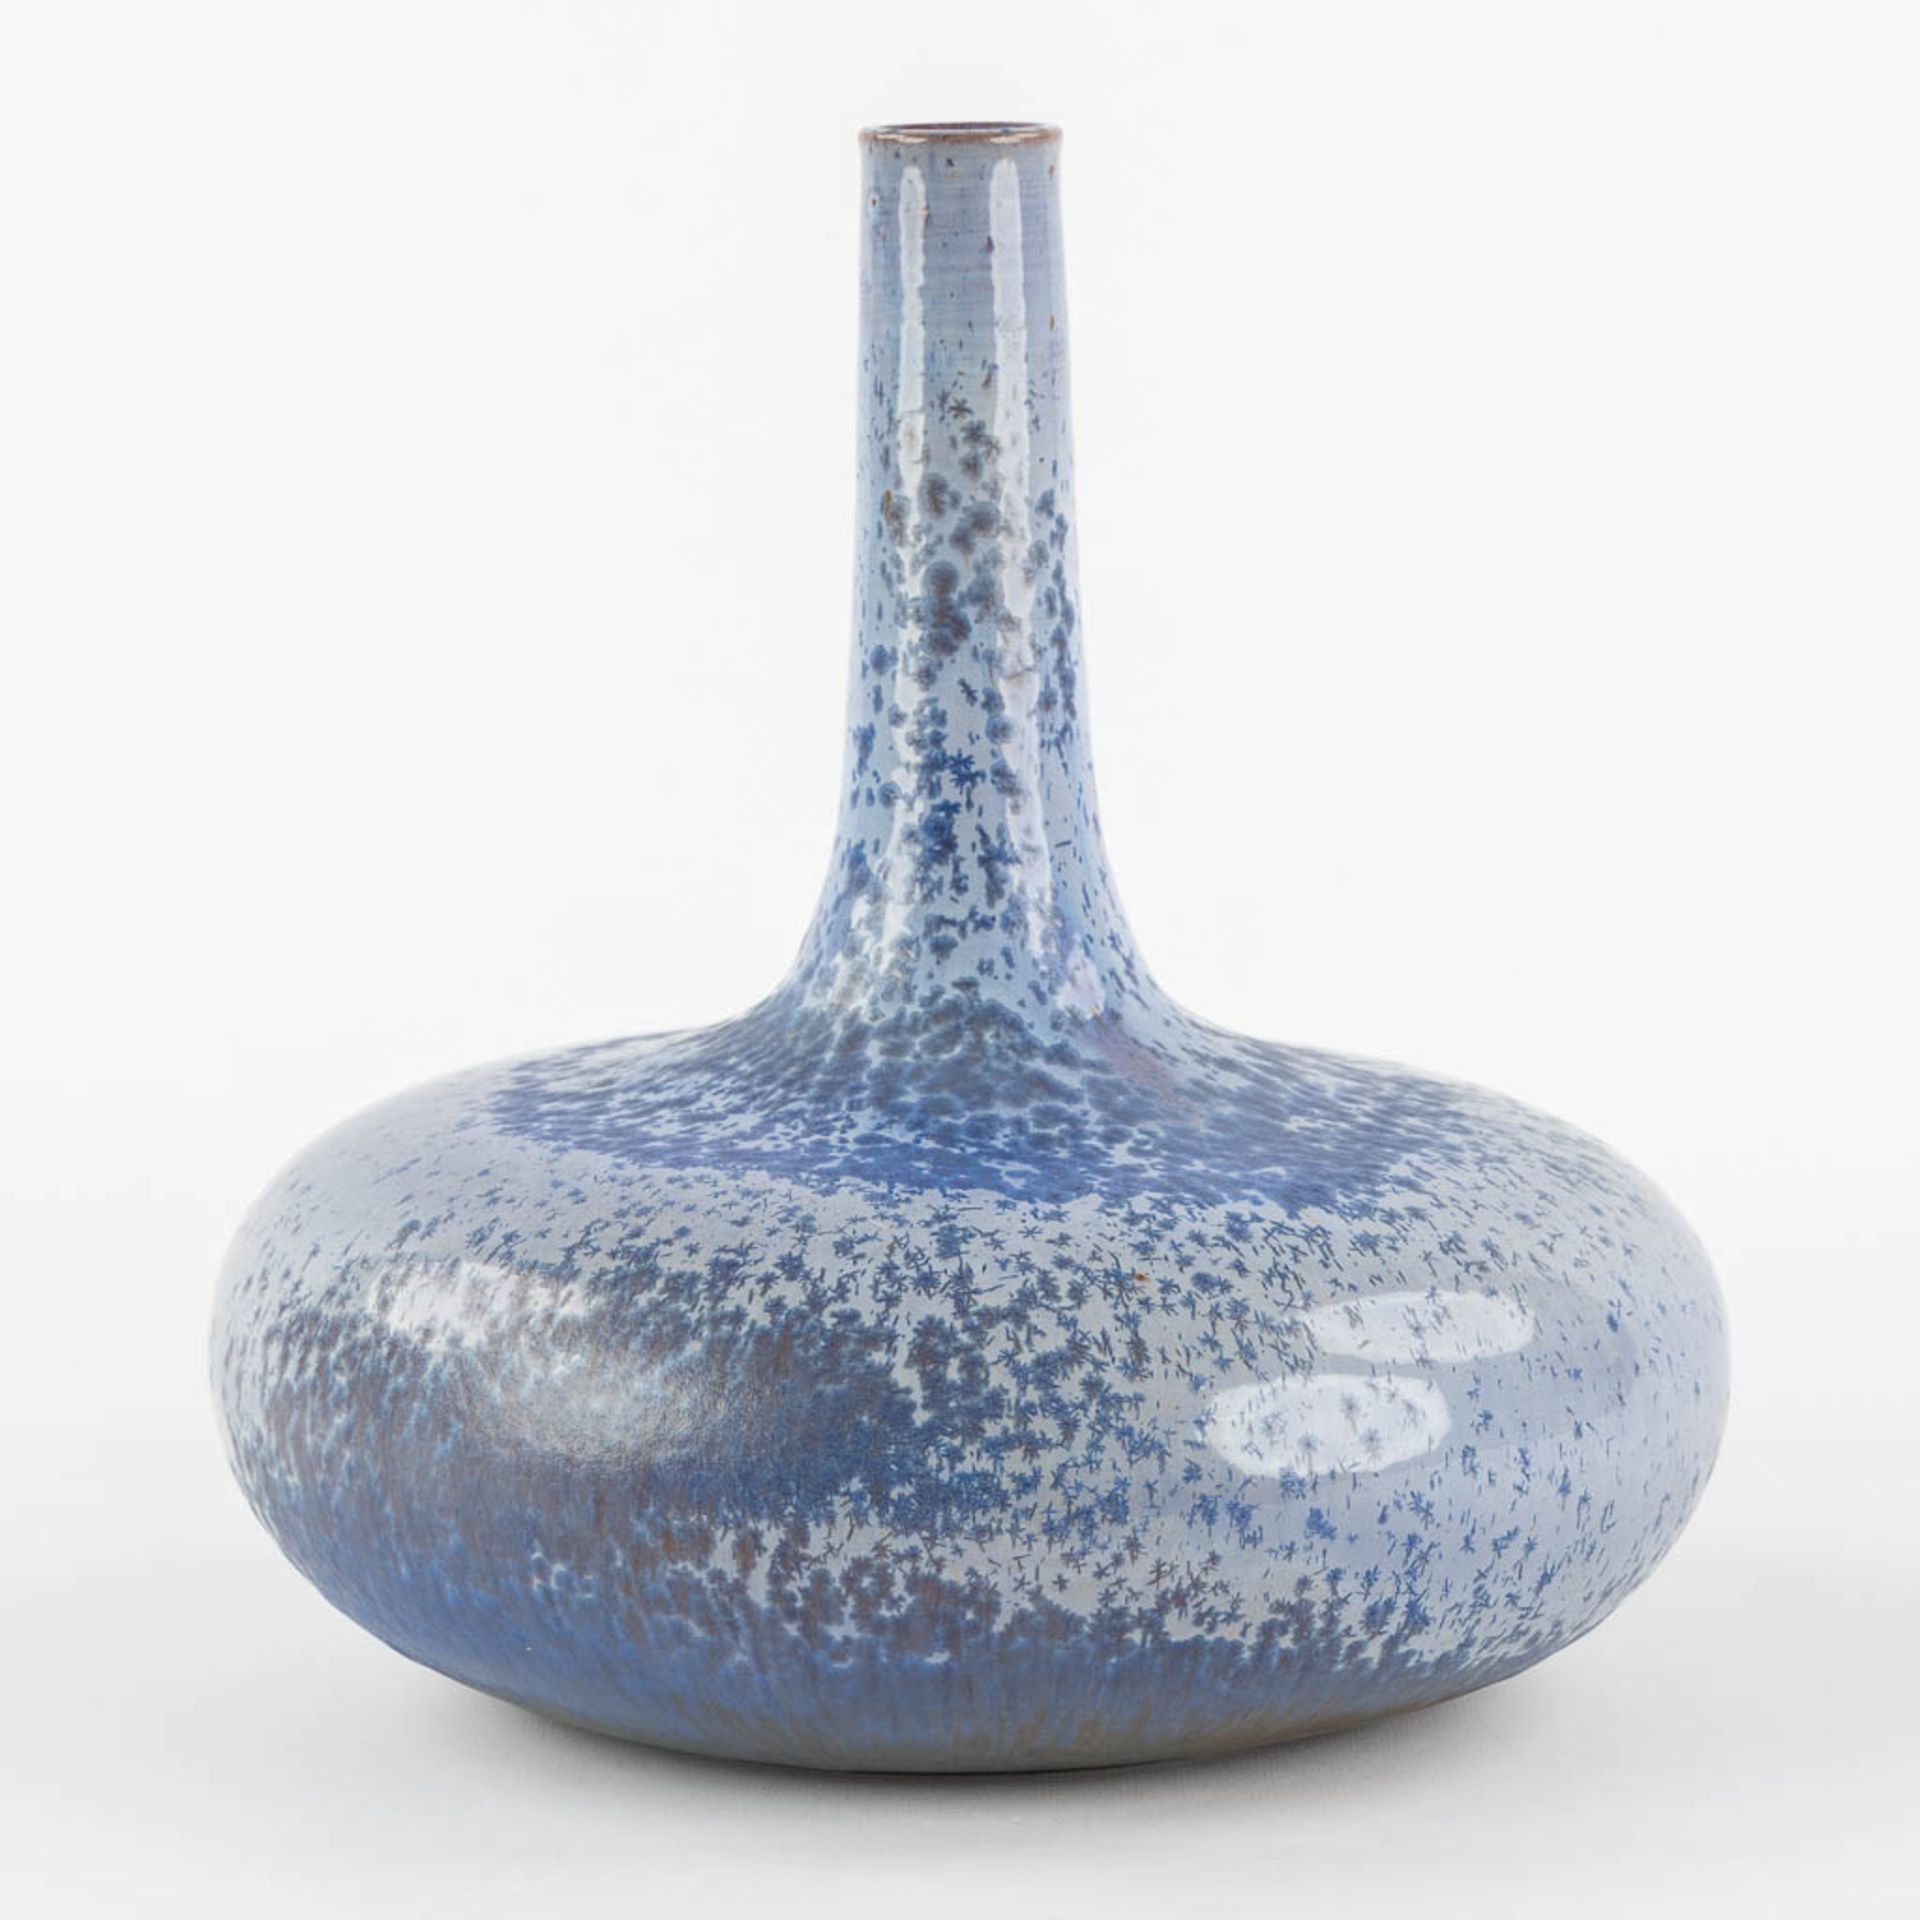 Antonio LAMPECCO (1932-2019) 'Vase' glazed ceramics. (H:29 x D:28 cm)